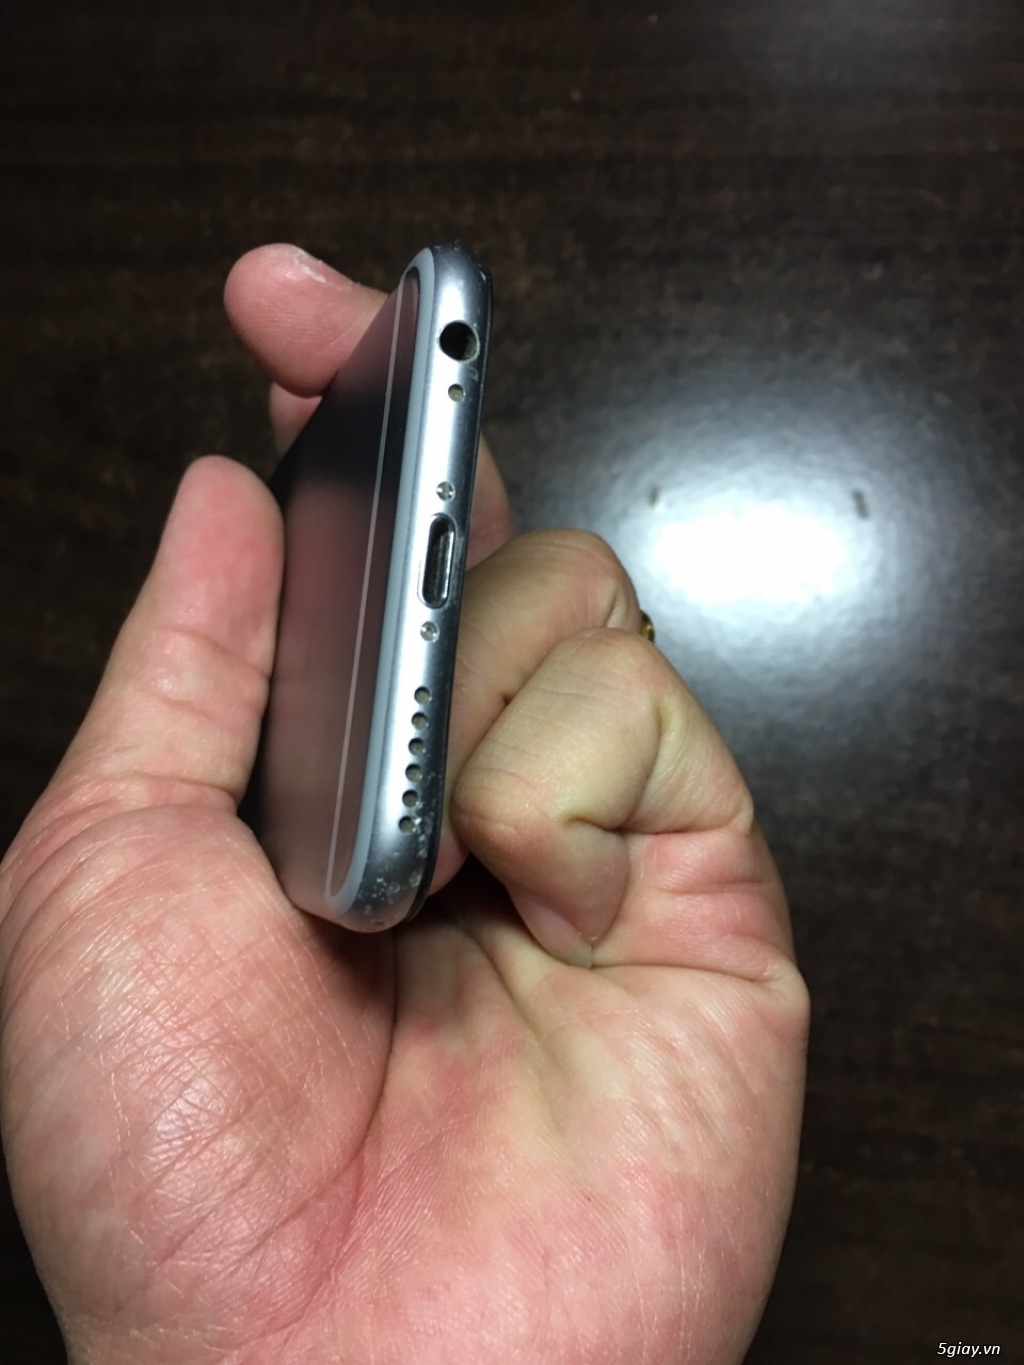 Bán Iphone 6s 64Gb quốc tế màu Gray, giá rẻ